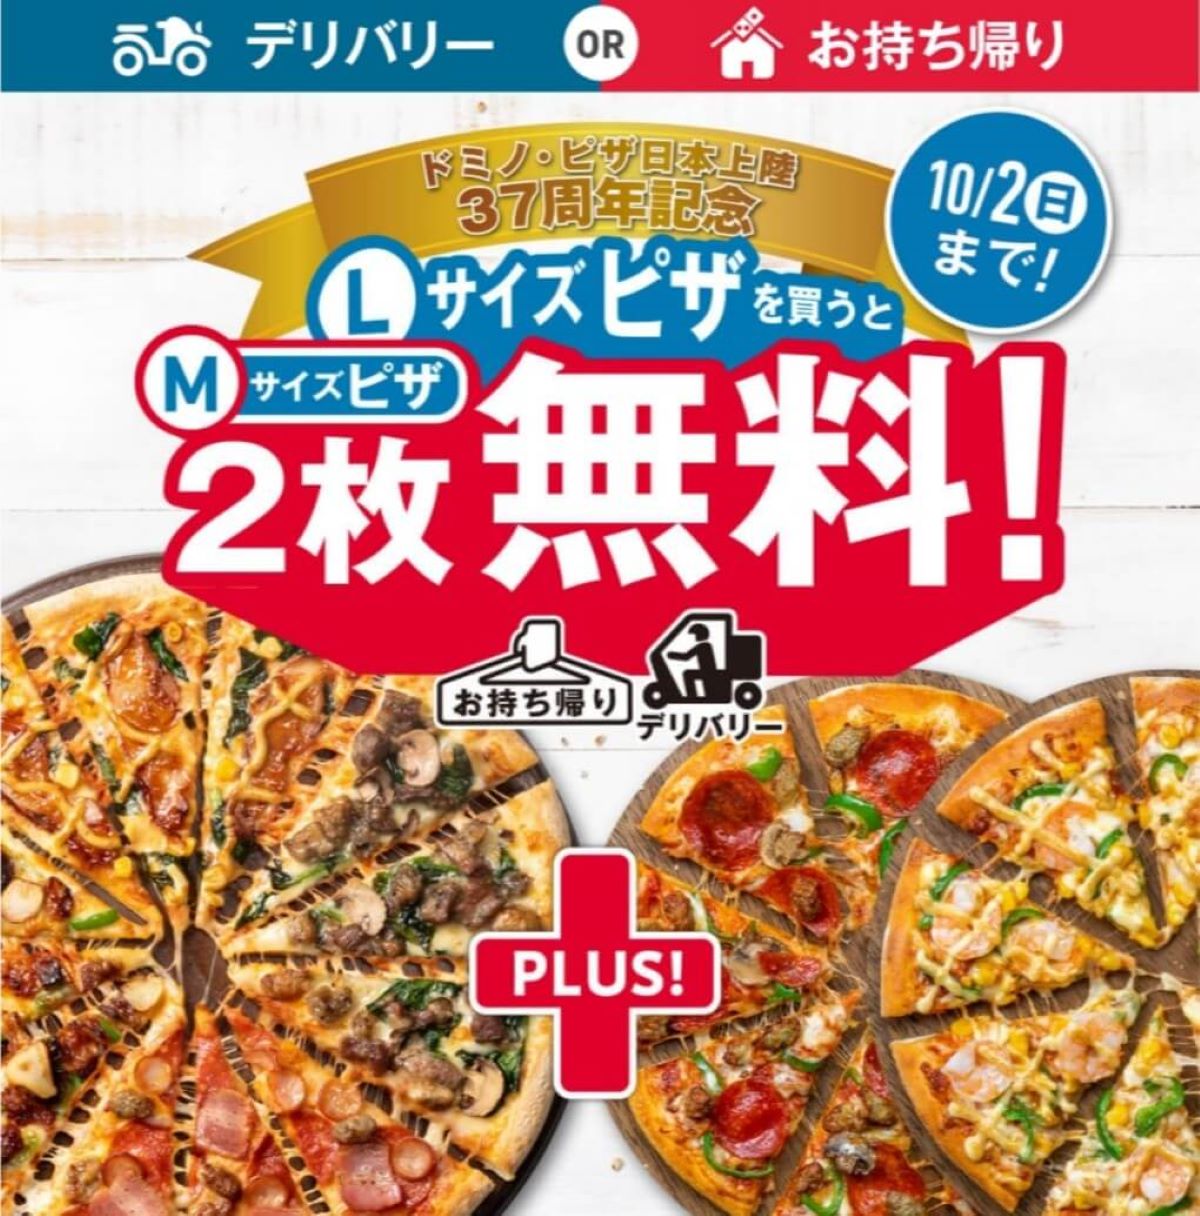 ドミノピザ-Lサイズピザ1枚買うとMサイズピザ2枚無料